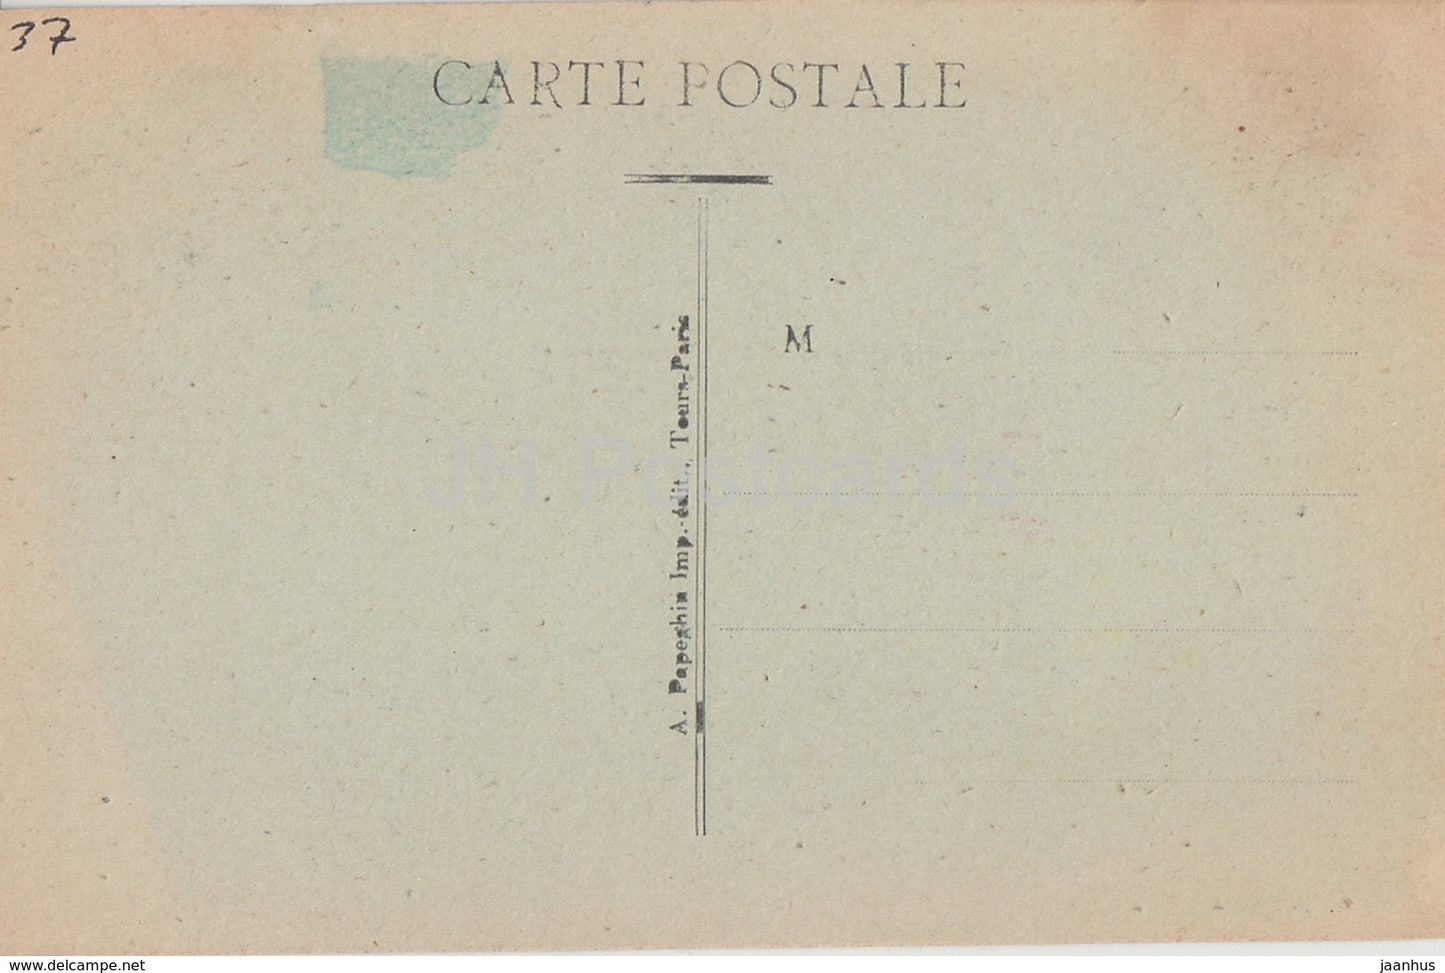 Cinq Mars - Les Snisses du Château - château - 2 - carte postale ancienne - France - inutilisée